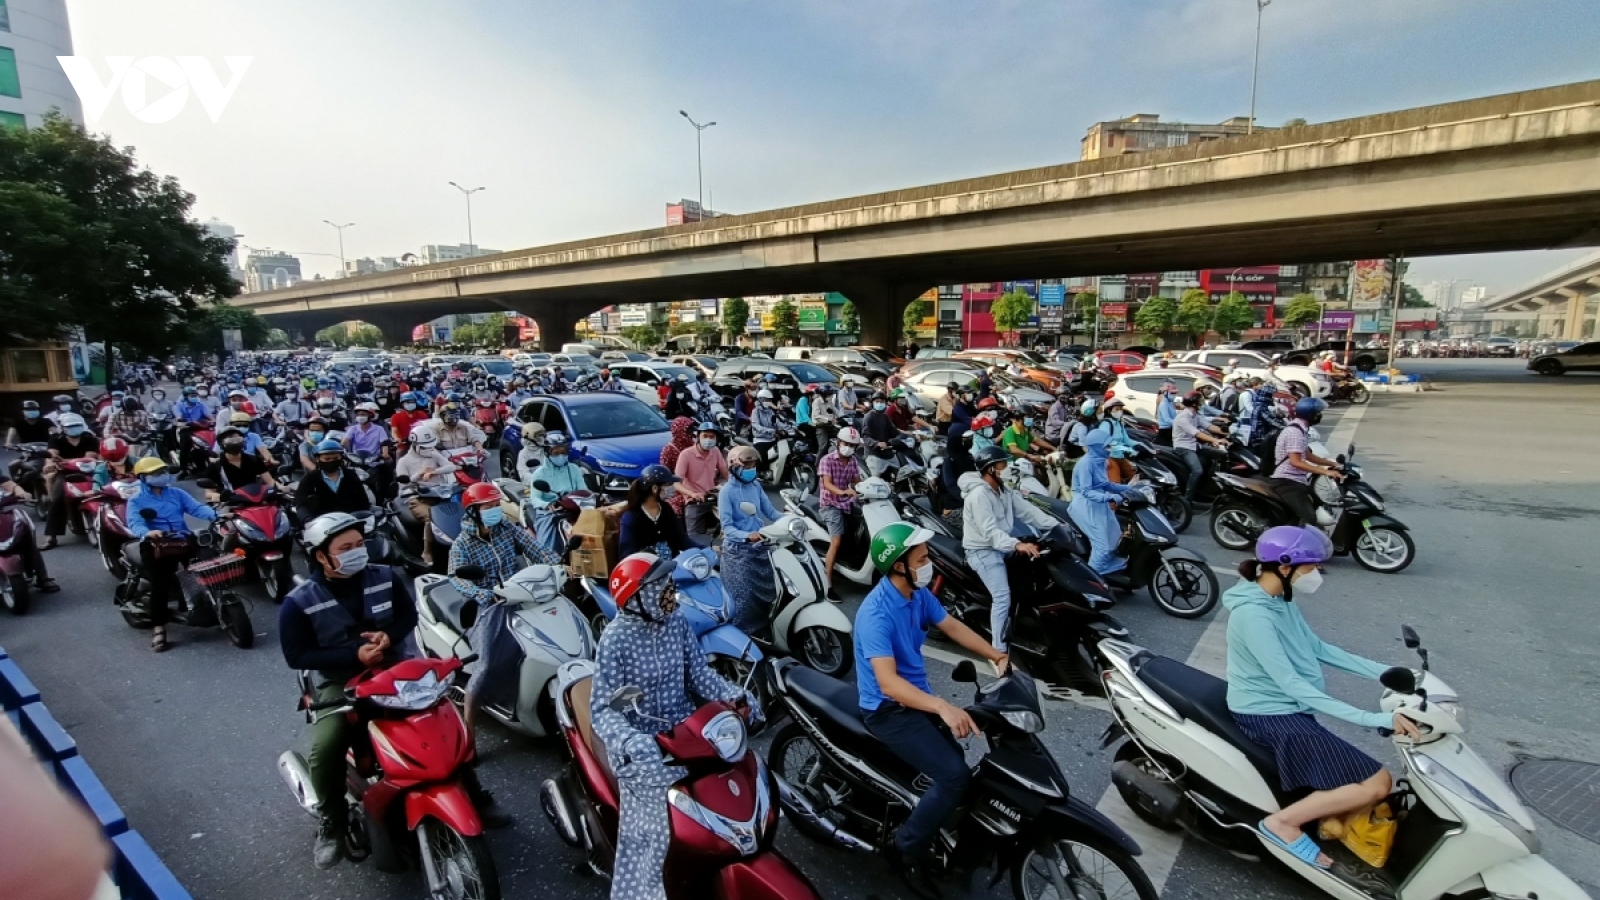 Hà Nội cấm xe máy khu vực nội đô từ năm 2025: Nóng vội quá sẽ hỏng việc